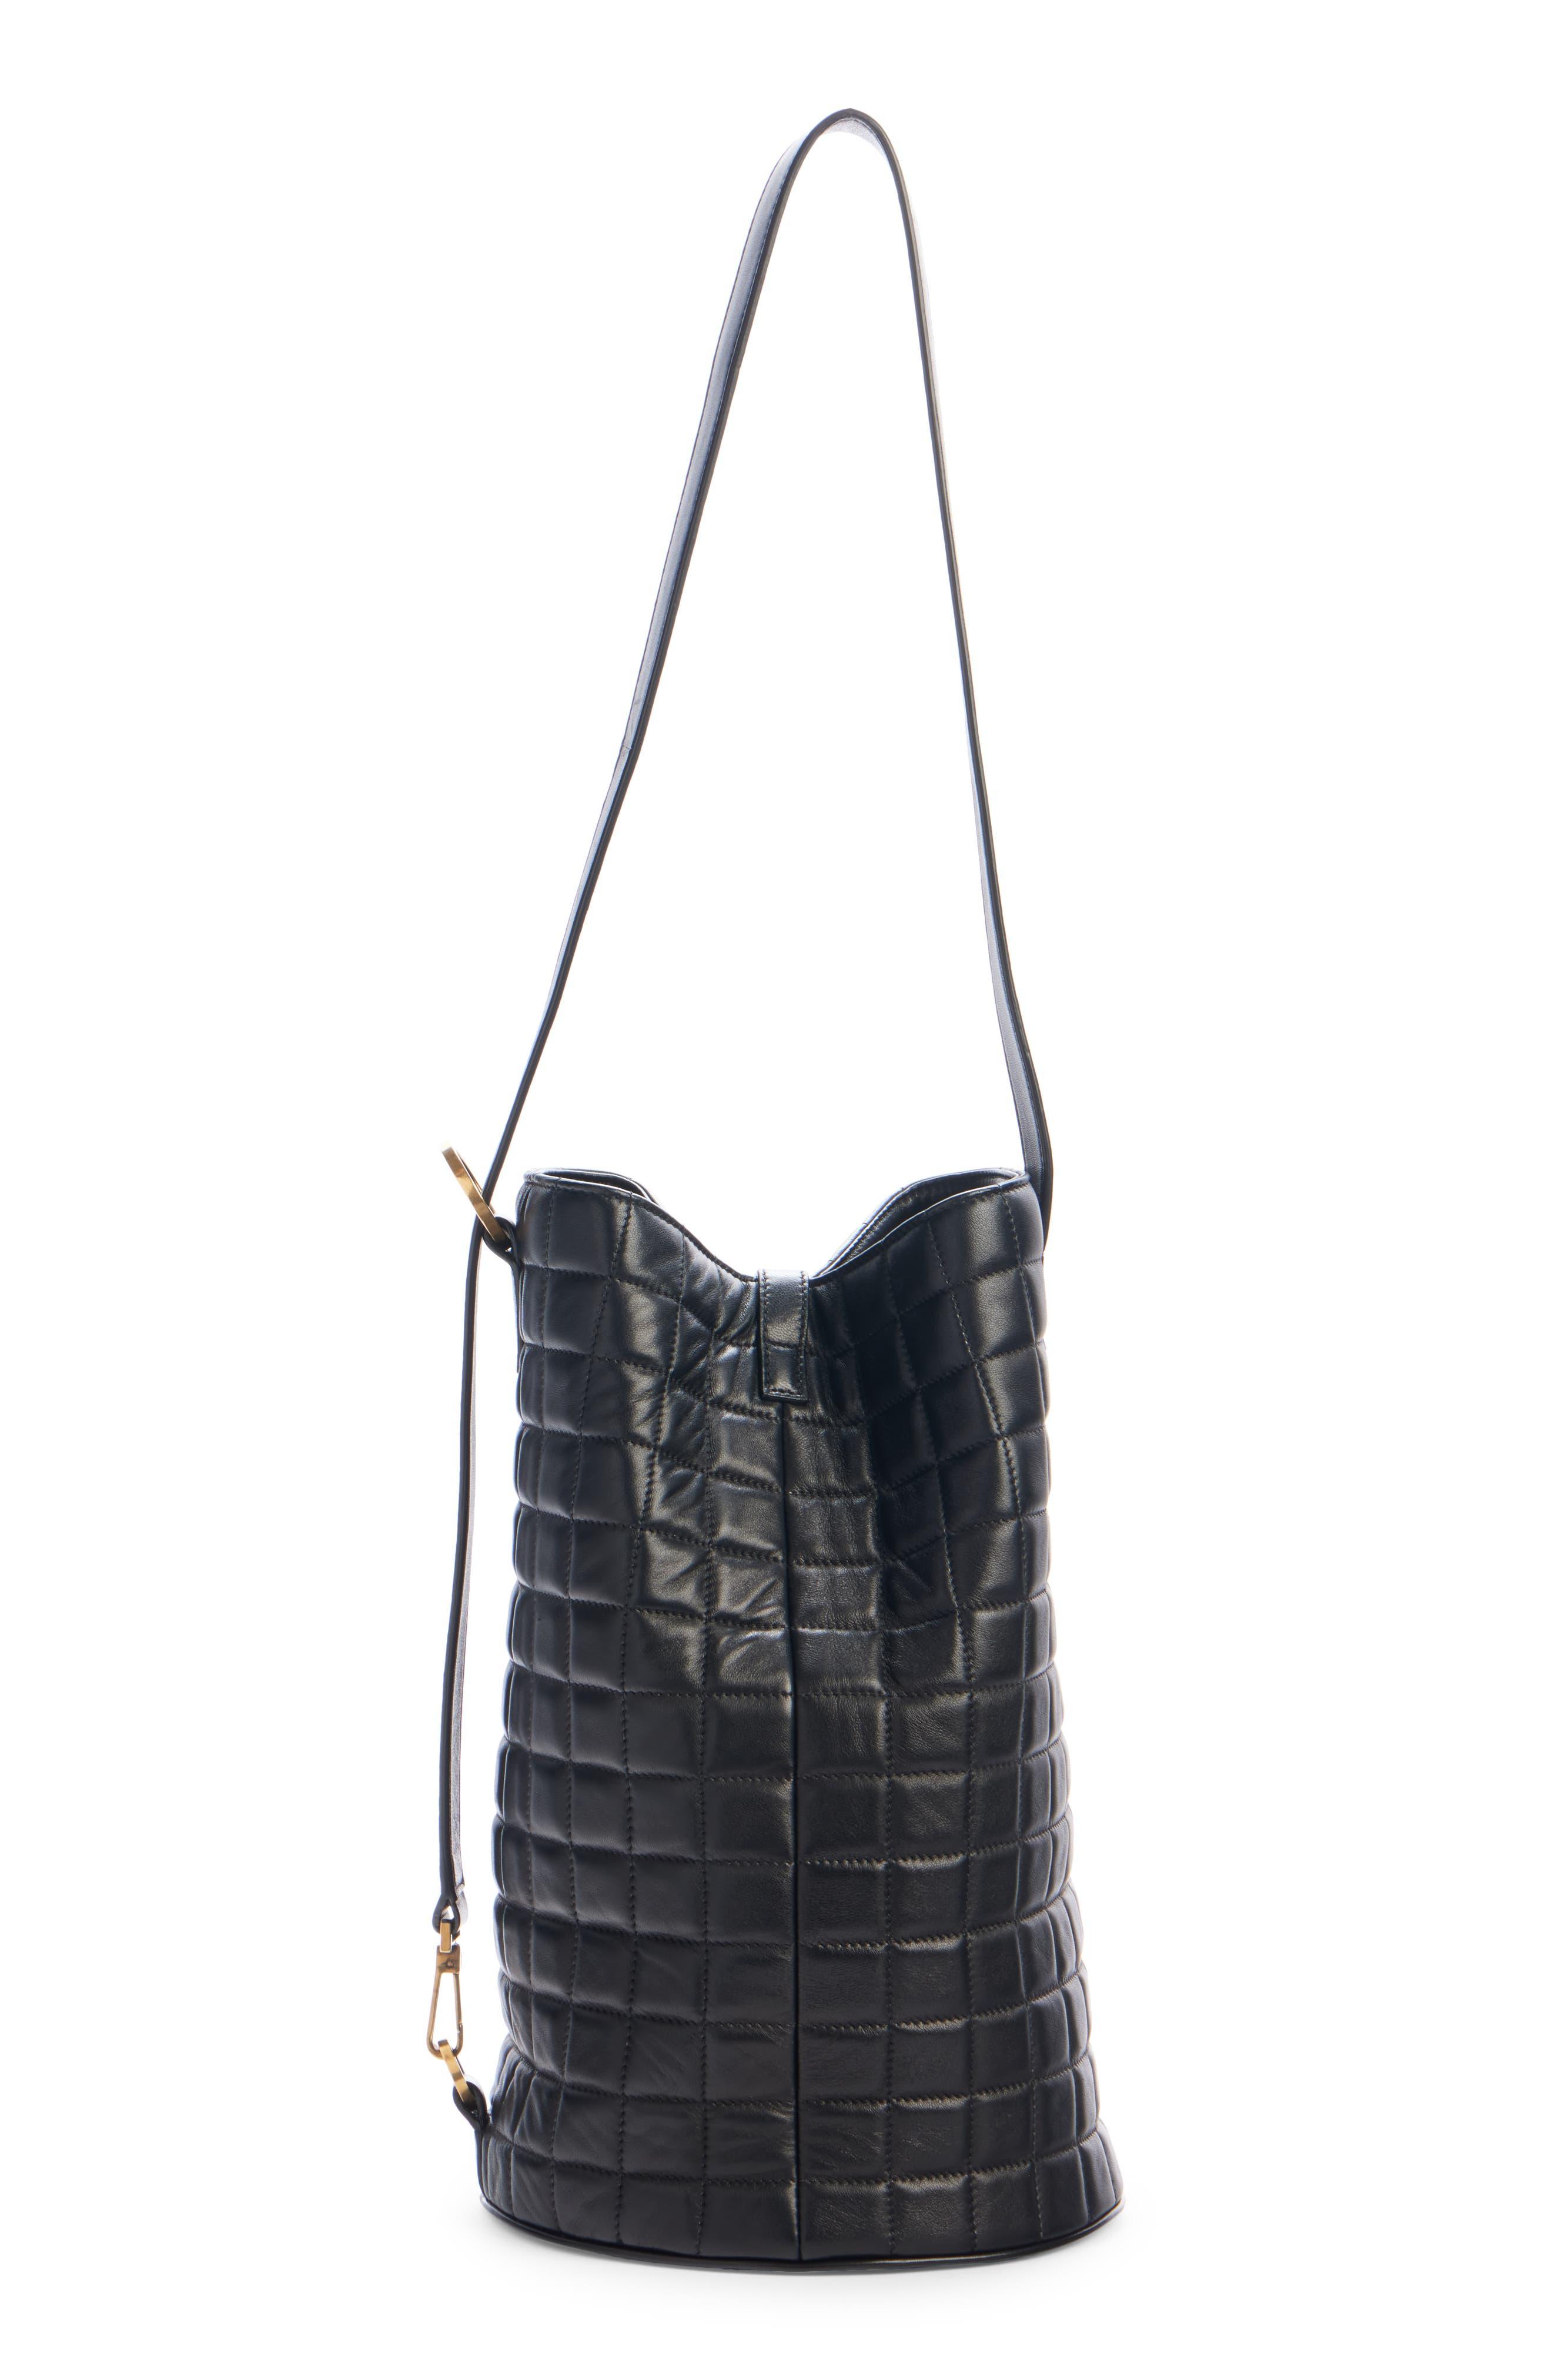 Saint Laurent Medium Quilted Leather Bucket Bag in Black